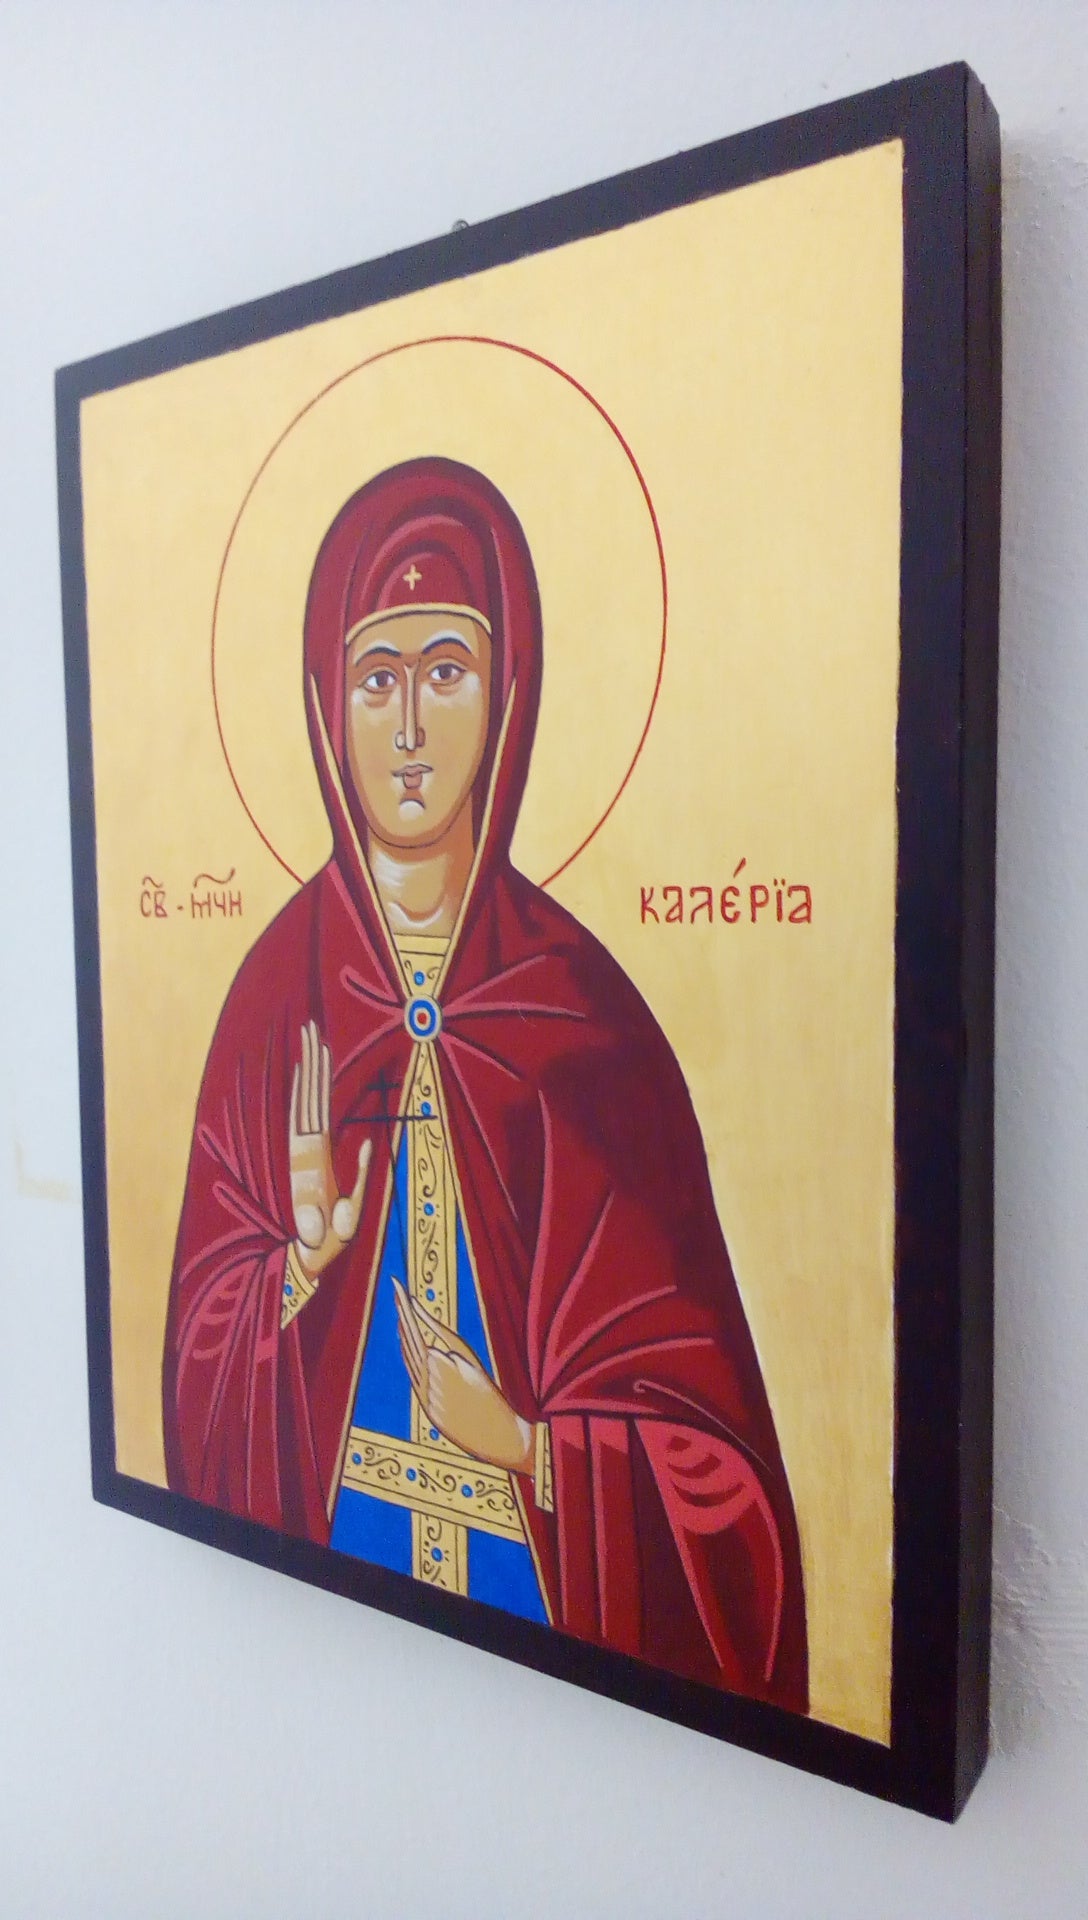 Saint Kaleria (Valeria) of Caesarea